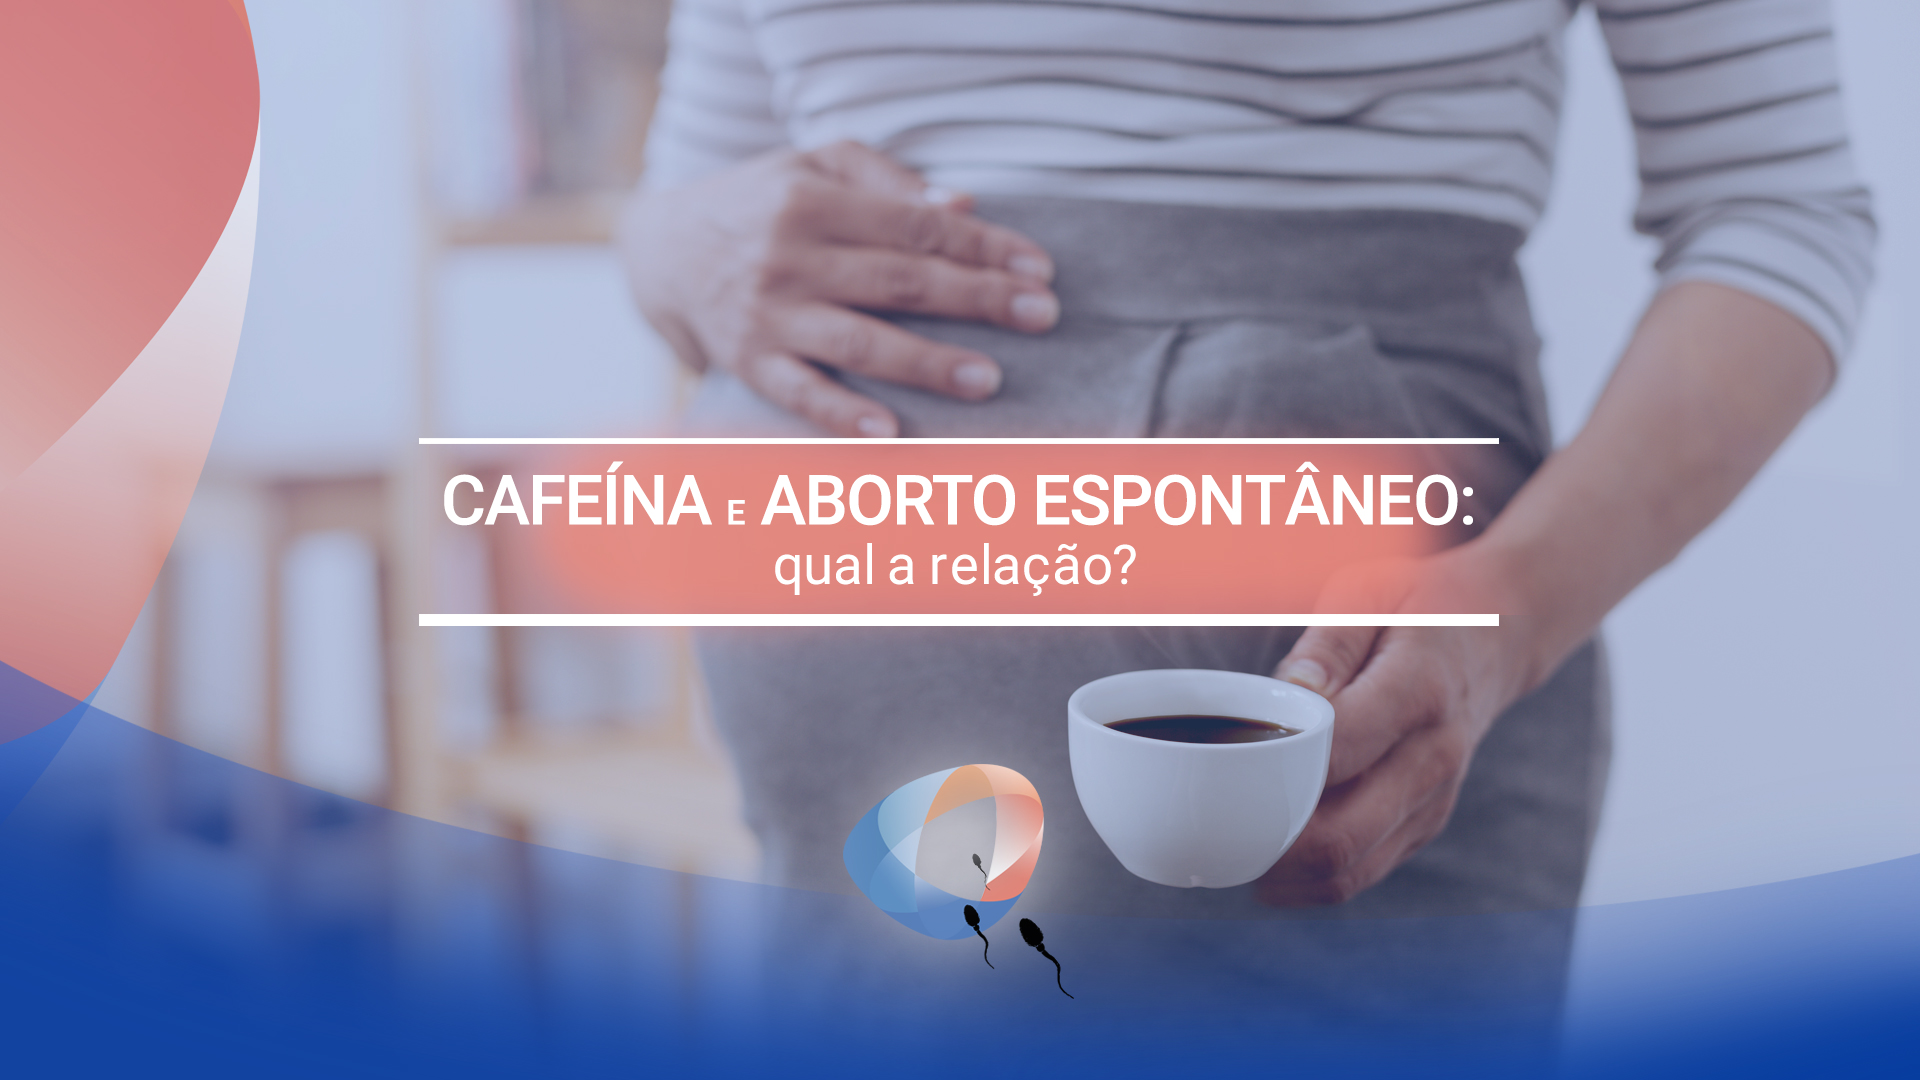 Cafeína e aborto espontâneo: qual a relação?